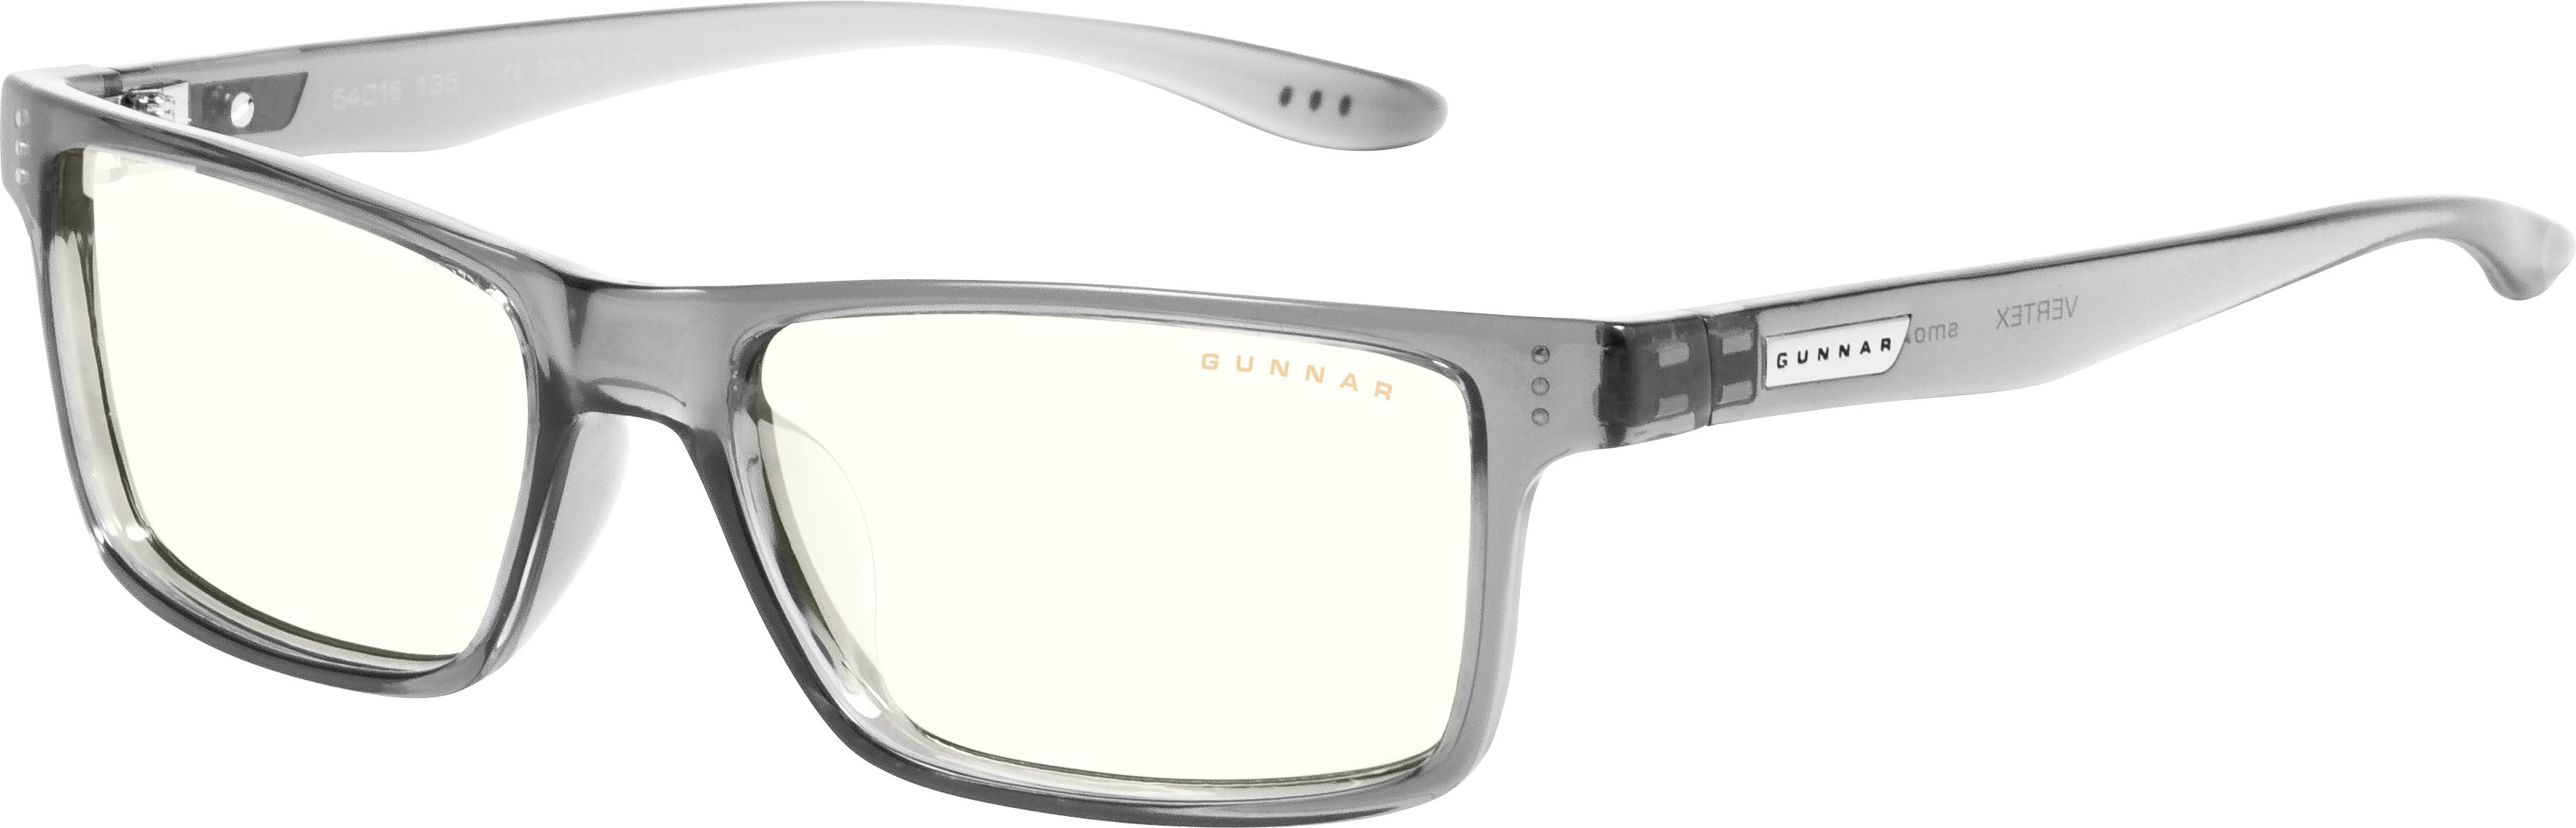 GUNNAR Blue Light Reading Glasses Vertex +3.0 Gray Crystal VER-06709-3. ...